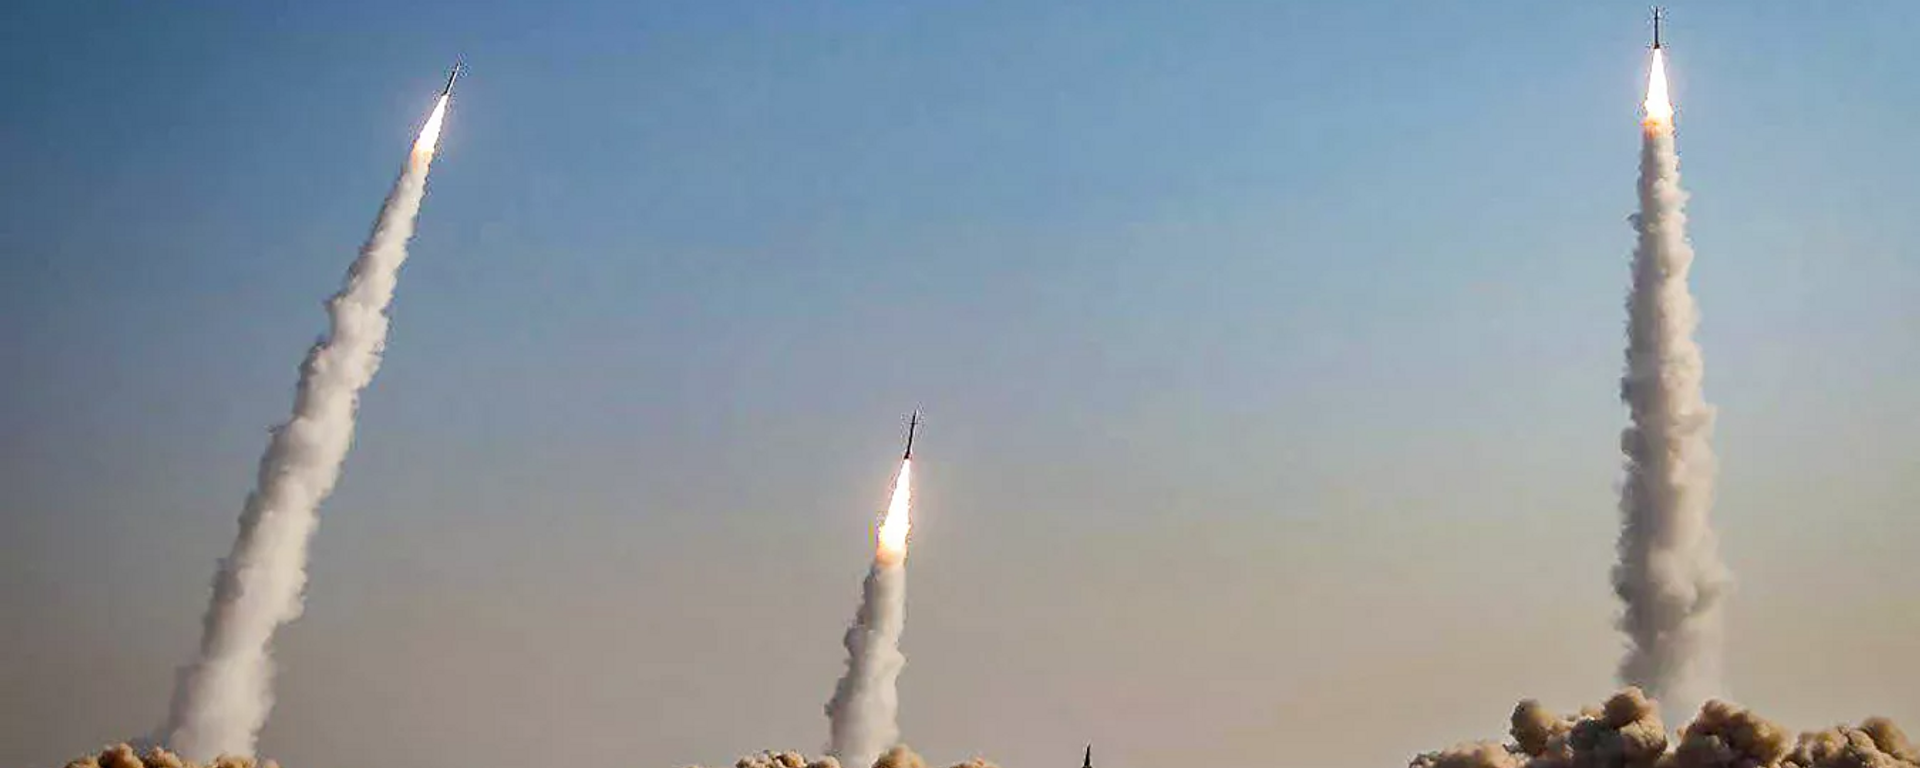 Irán realiza un masivo lanzamiento simultáneo de misiles balísticos, el 24 de diciembre del 2021 - Sputnik Mundo, 1920, 25.12.2021